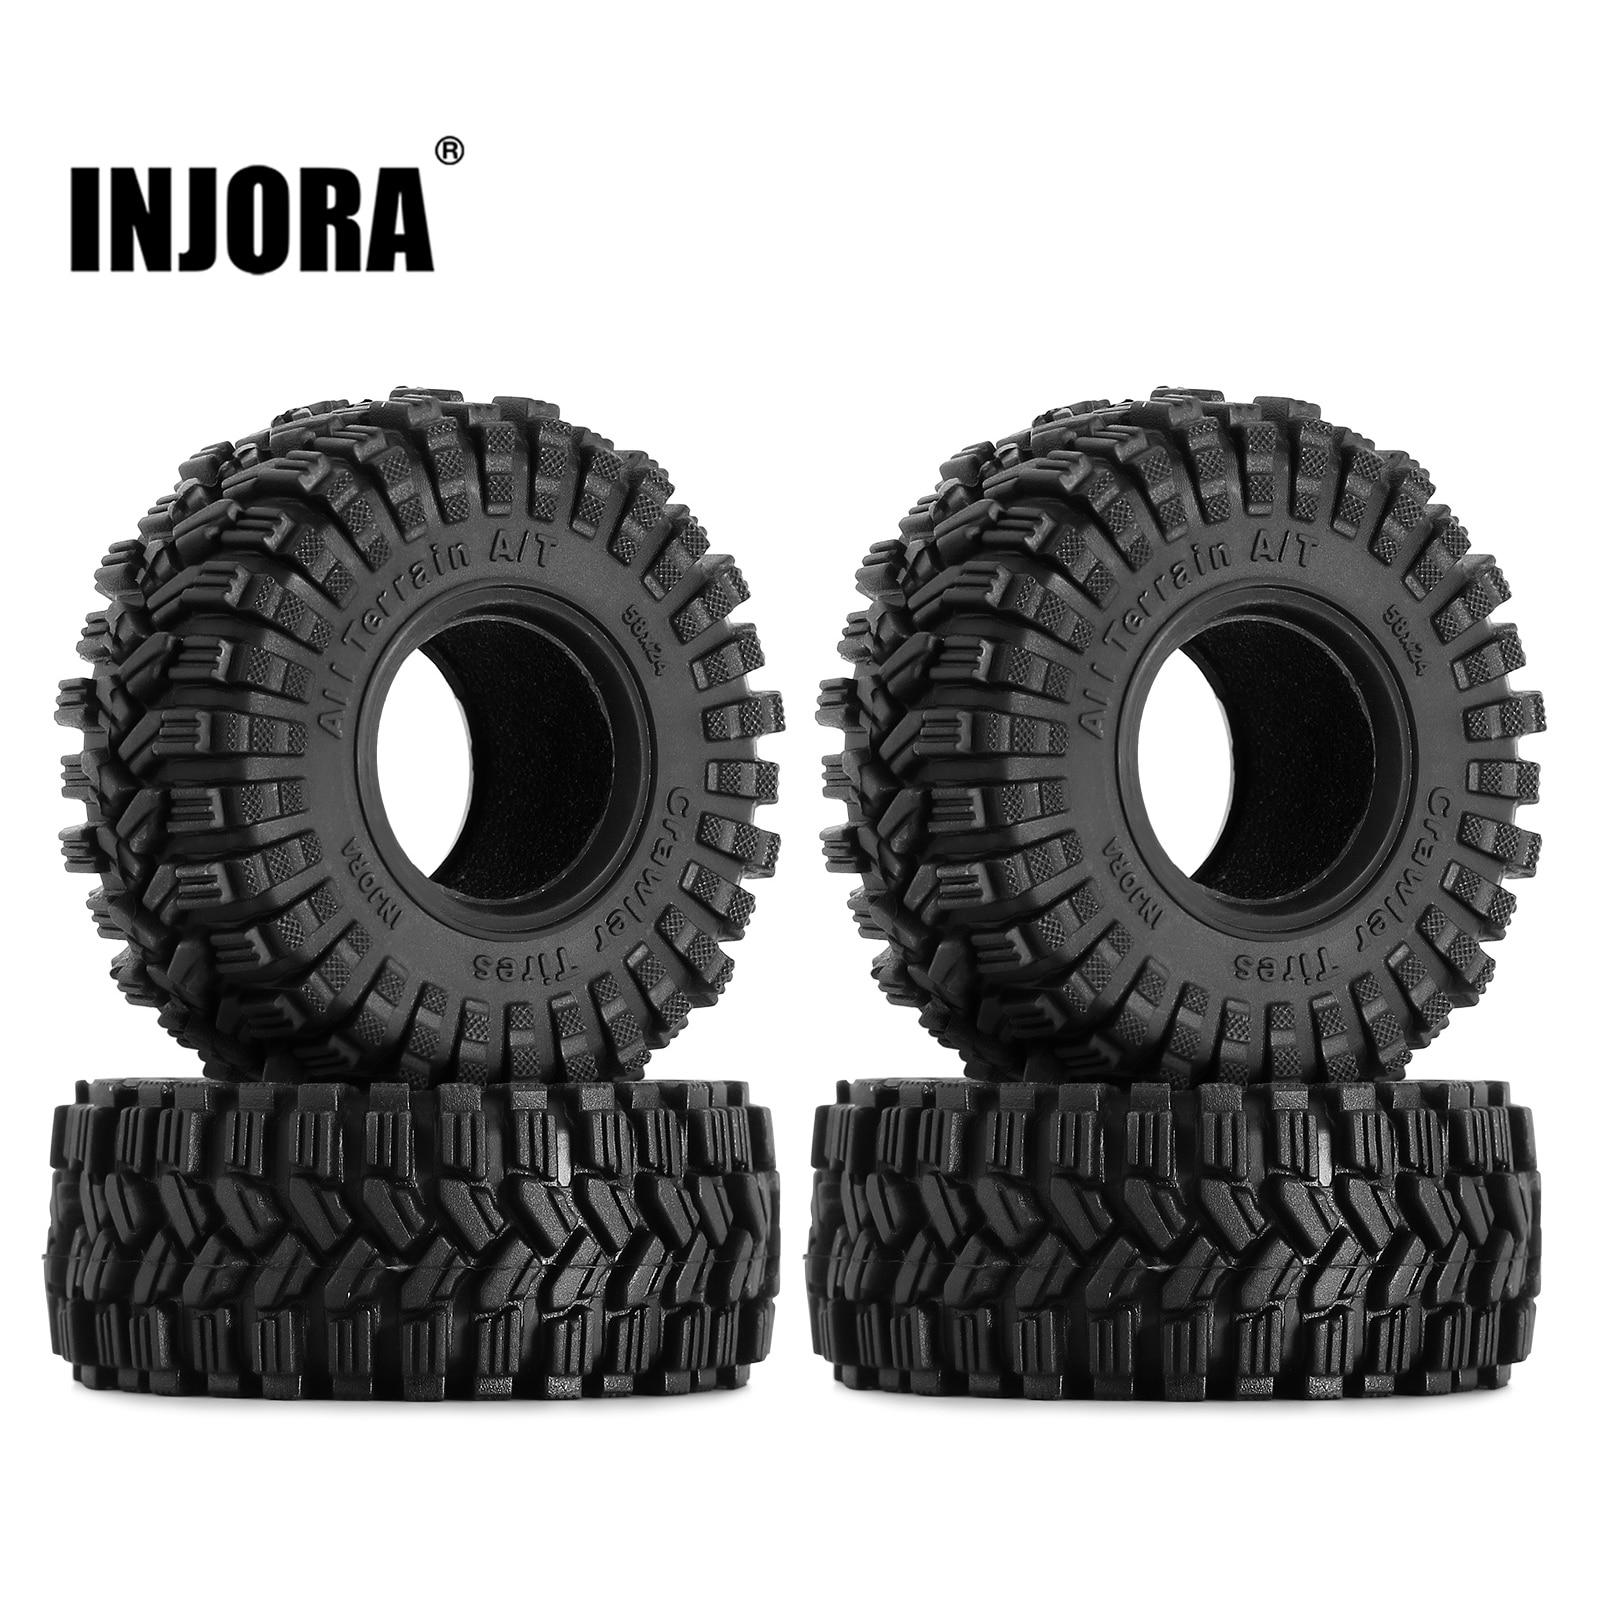 INJORA-58-24mm-All-Terrain-Super-Soft-Sticky-1-0-Wheel-Tires-for-1-18-1.jpg